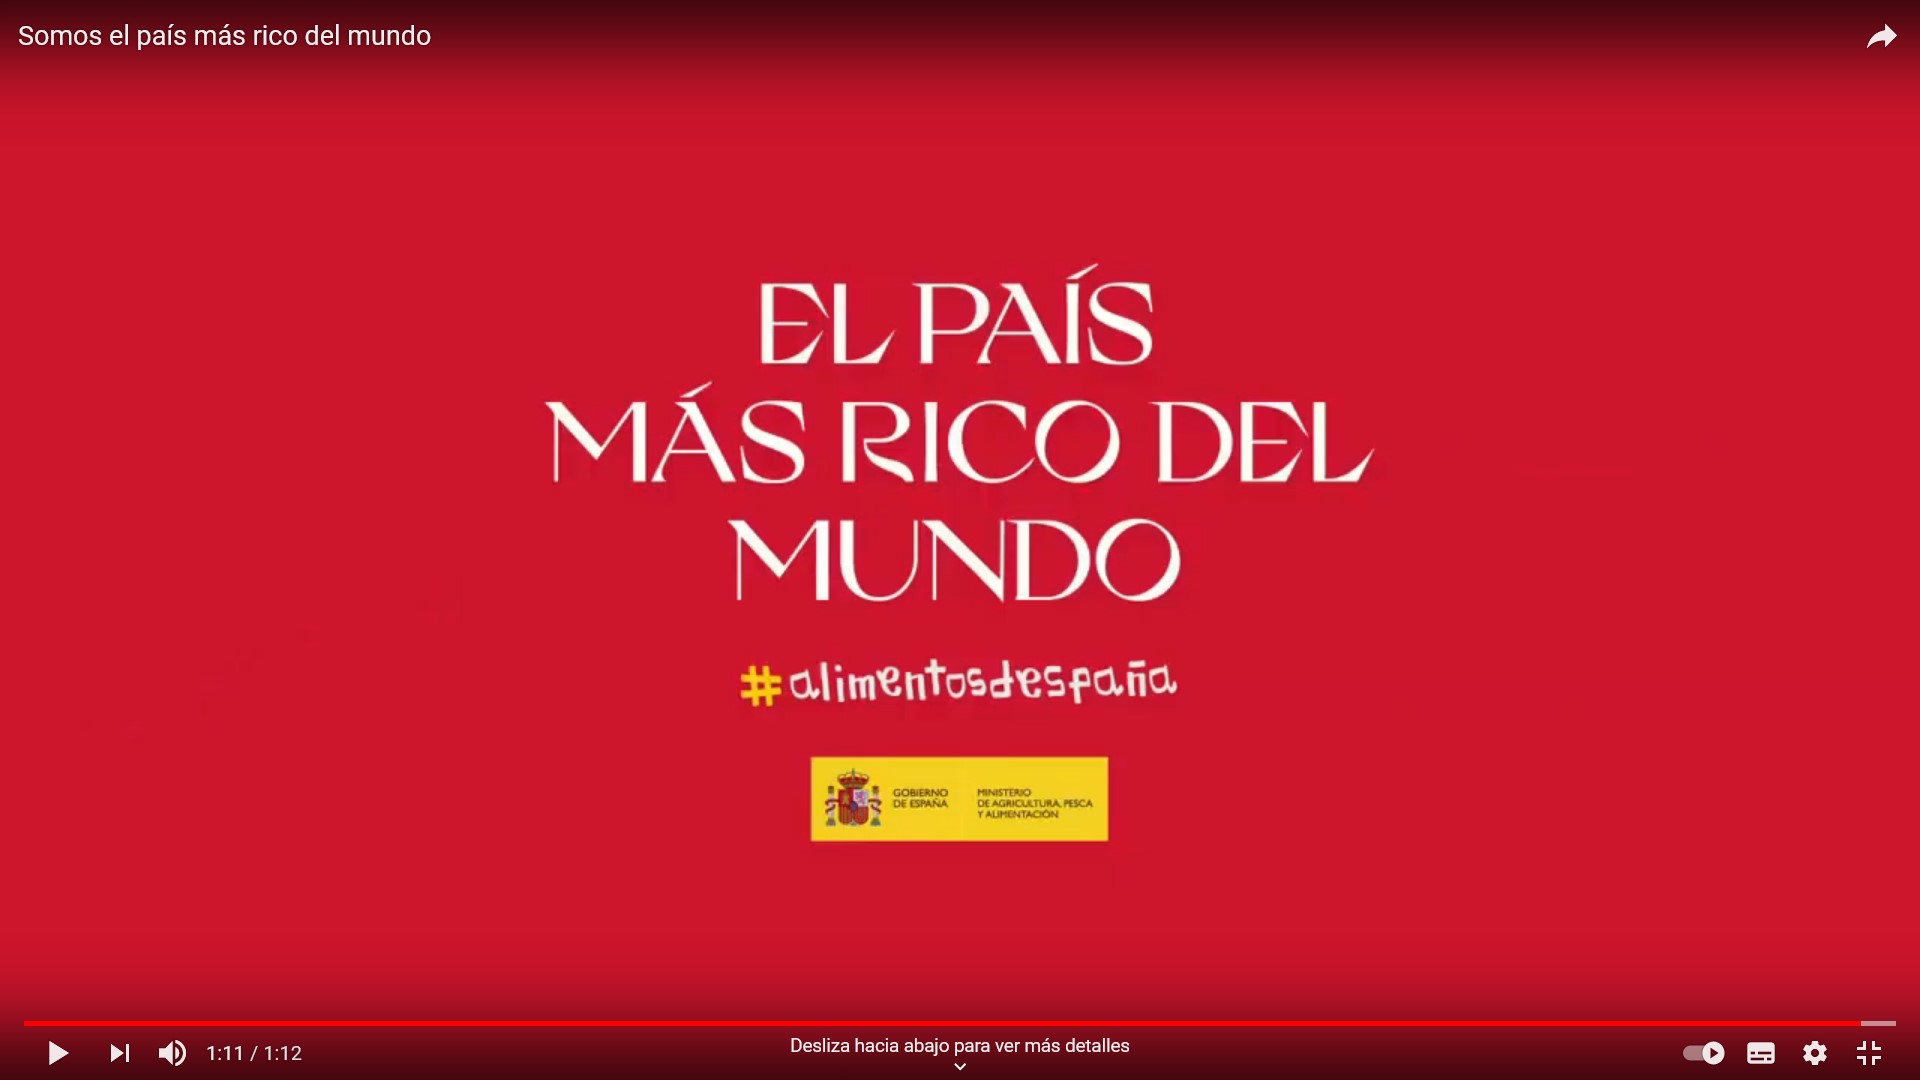 «El país más rico del mundo», gran campaña de promoción de los alimentos de España